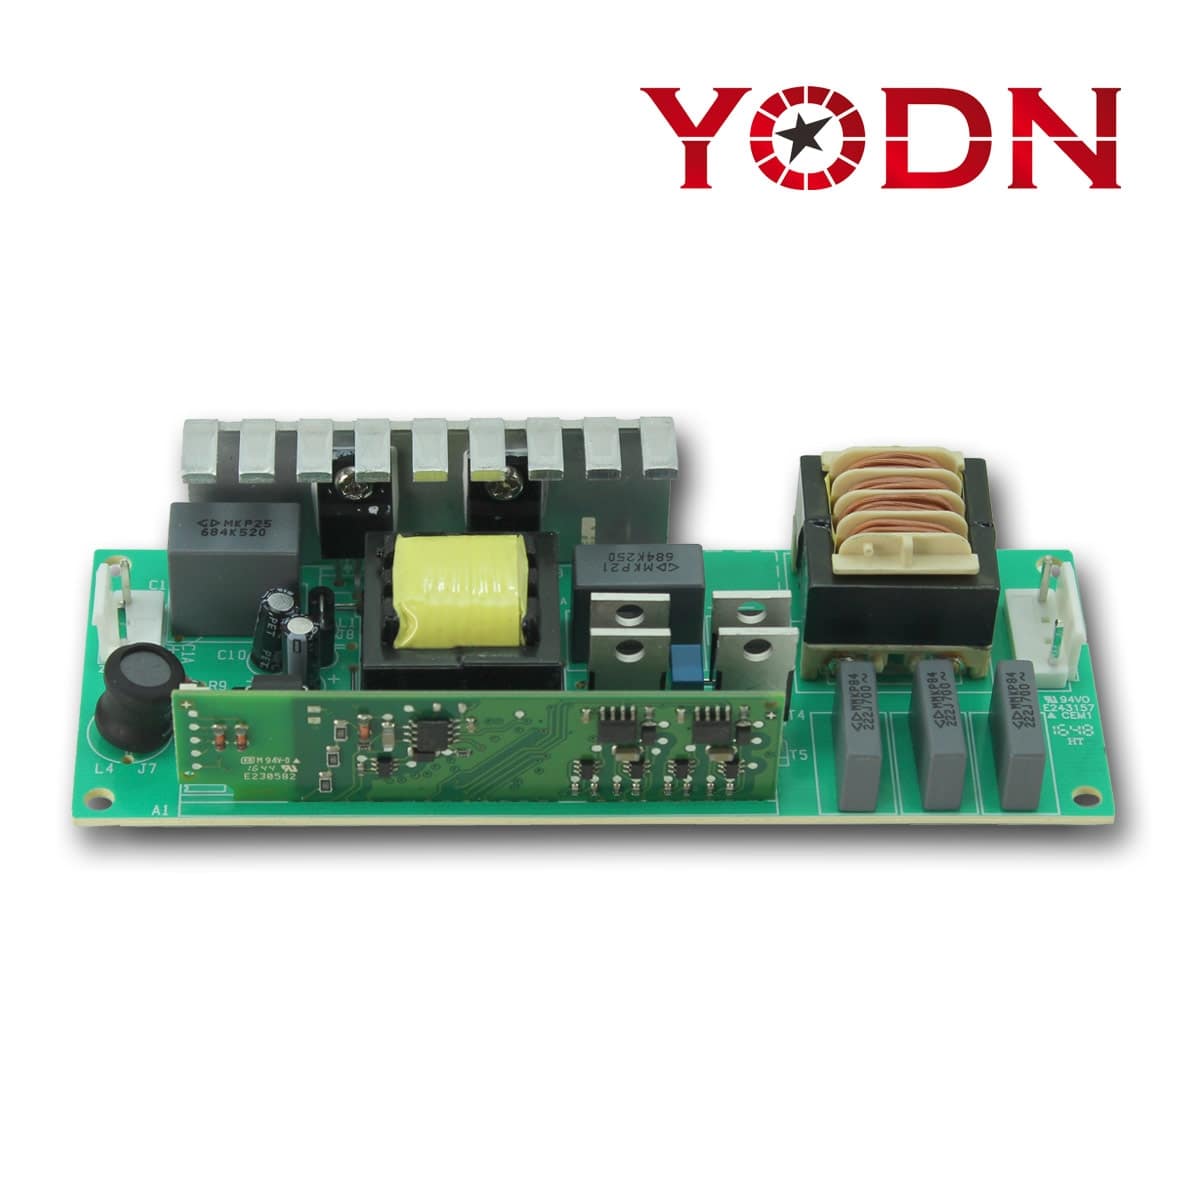 Accenditore elettronico per MSD 150 R3 YODN